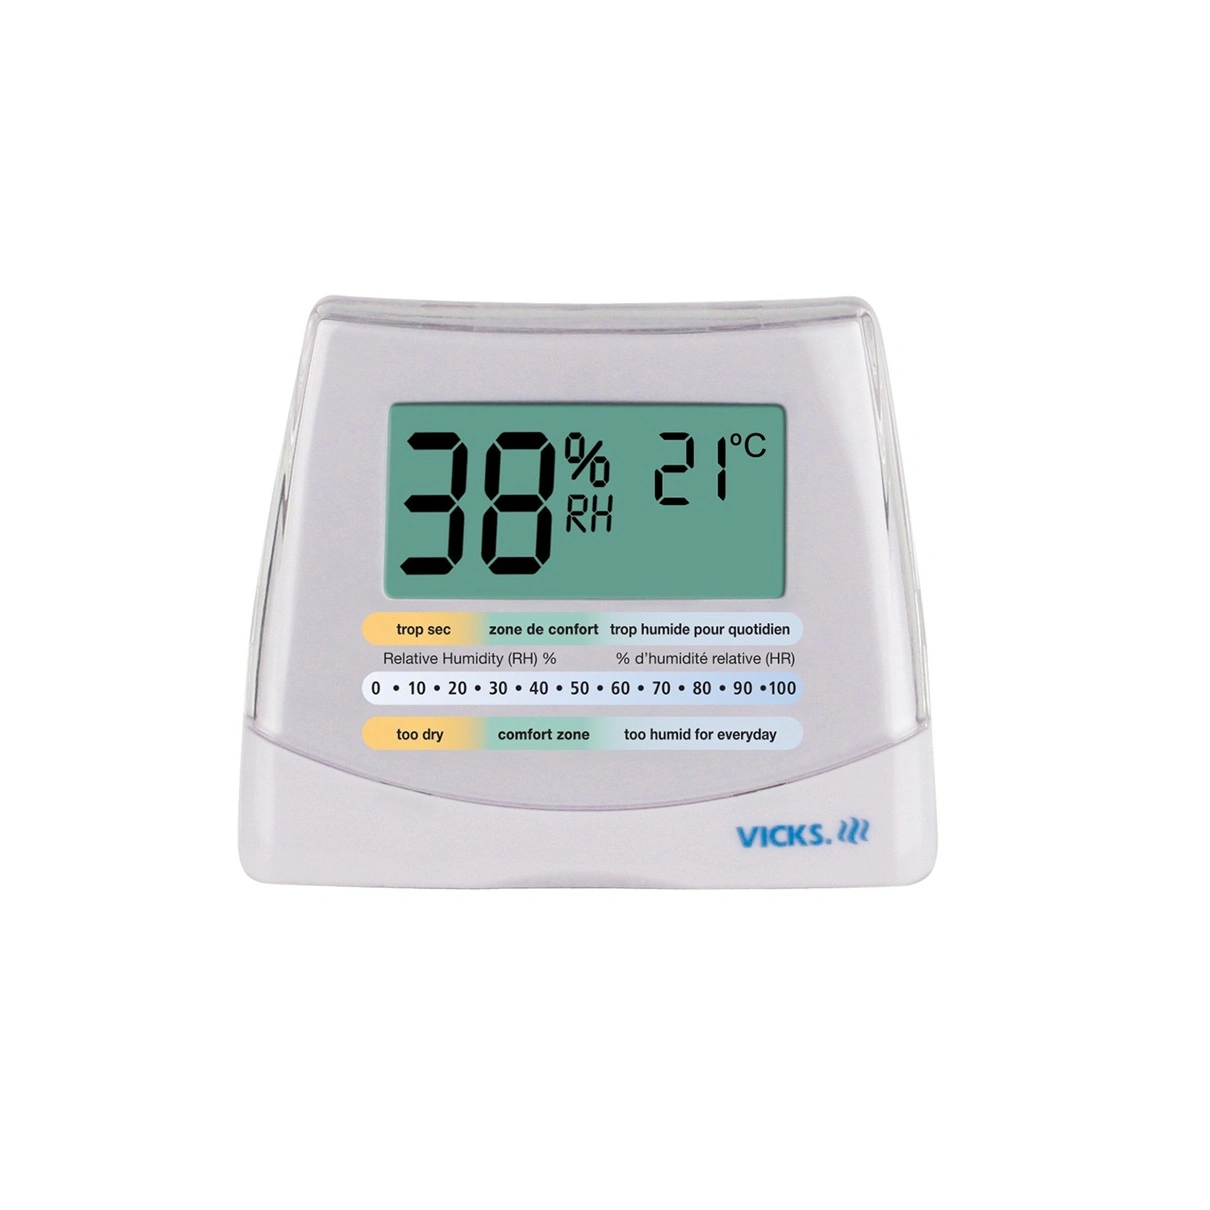 v70-can-vicks-r-humidity-monitor